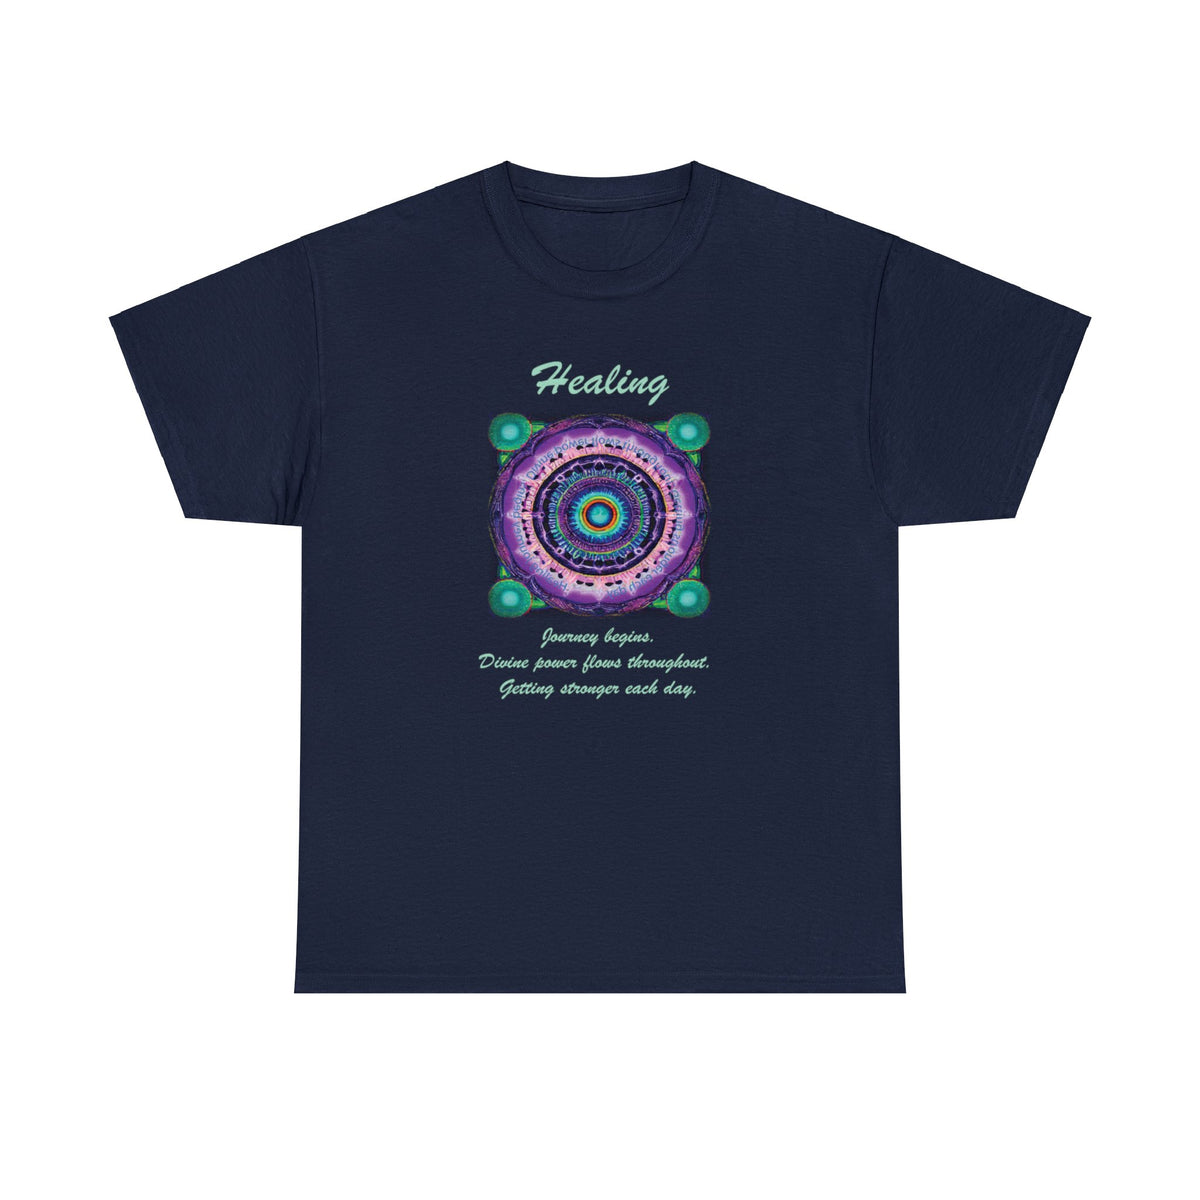 Wellness shirts - 432 Hz Healing Frequency Healing Mandala